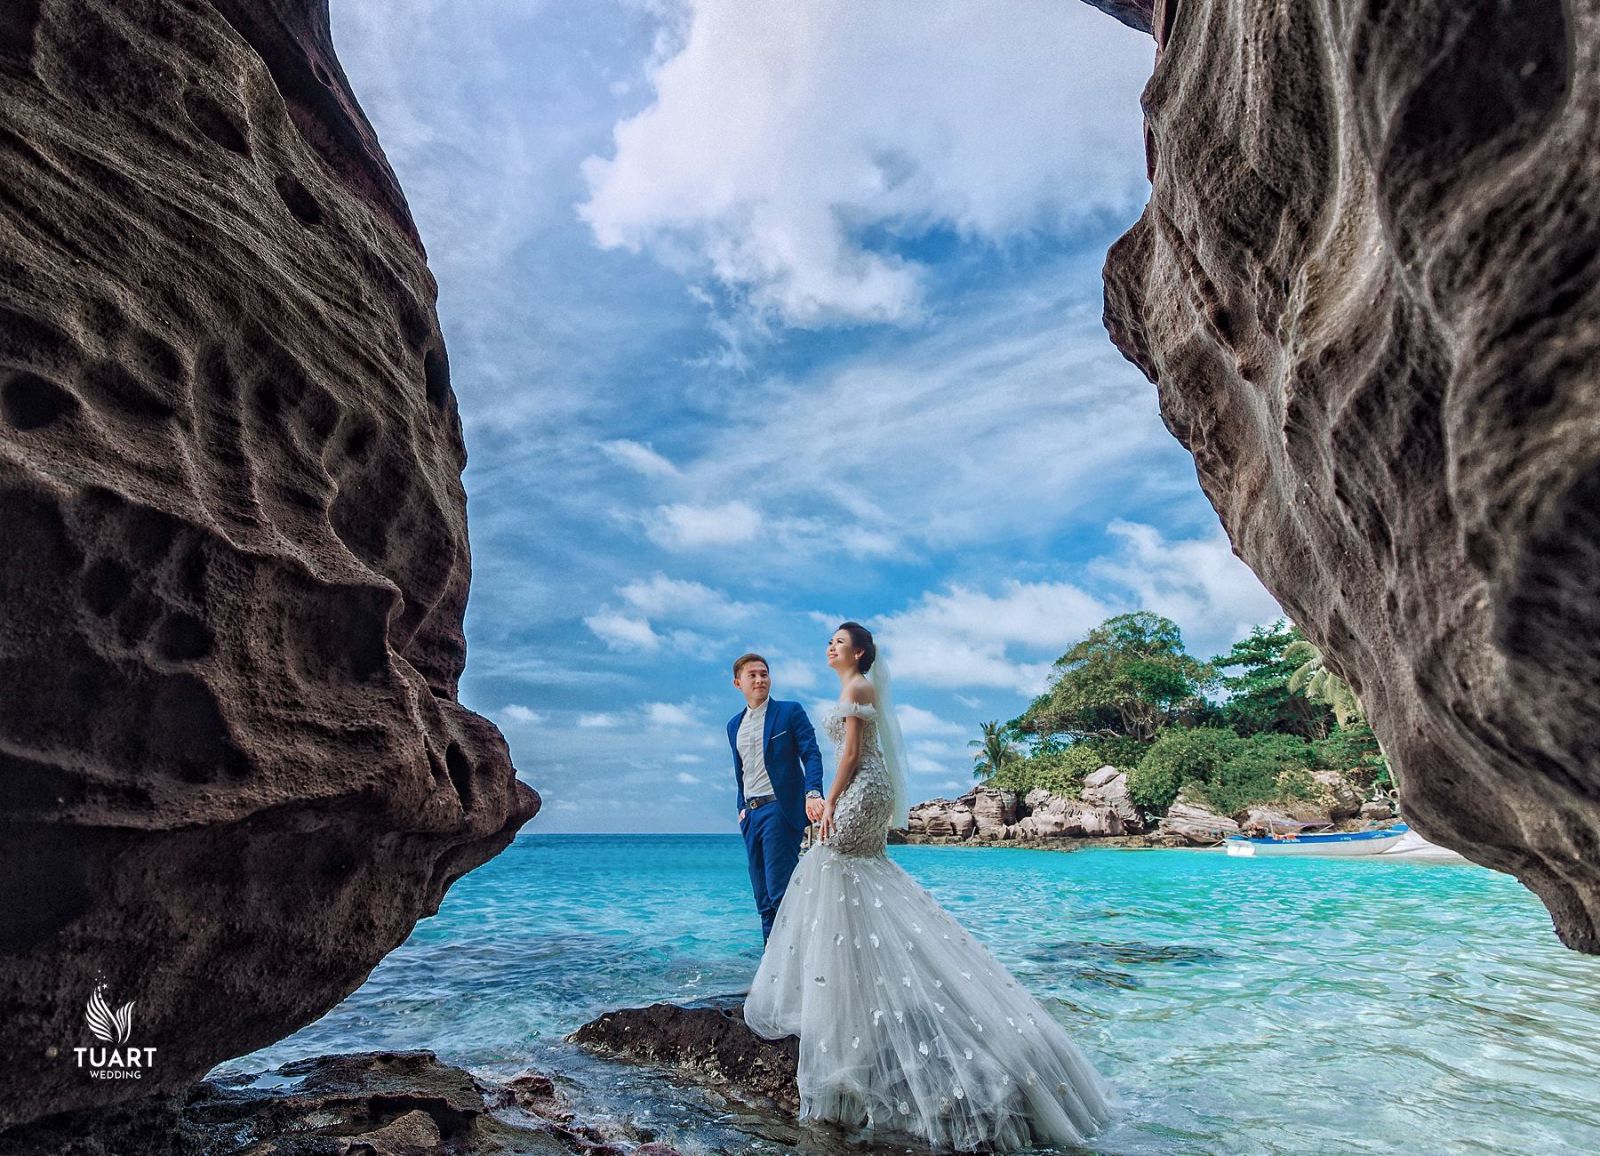 Tour chụp ảnh cưới tại đảo ngọc Phú Quốc chỉ còn 2 slot 6